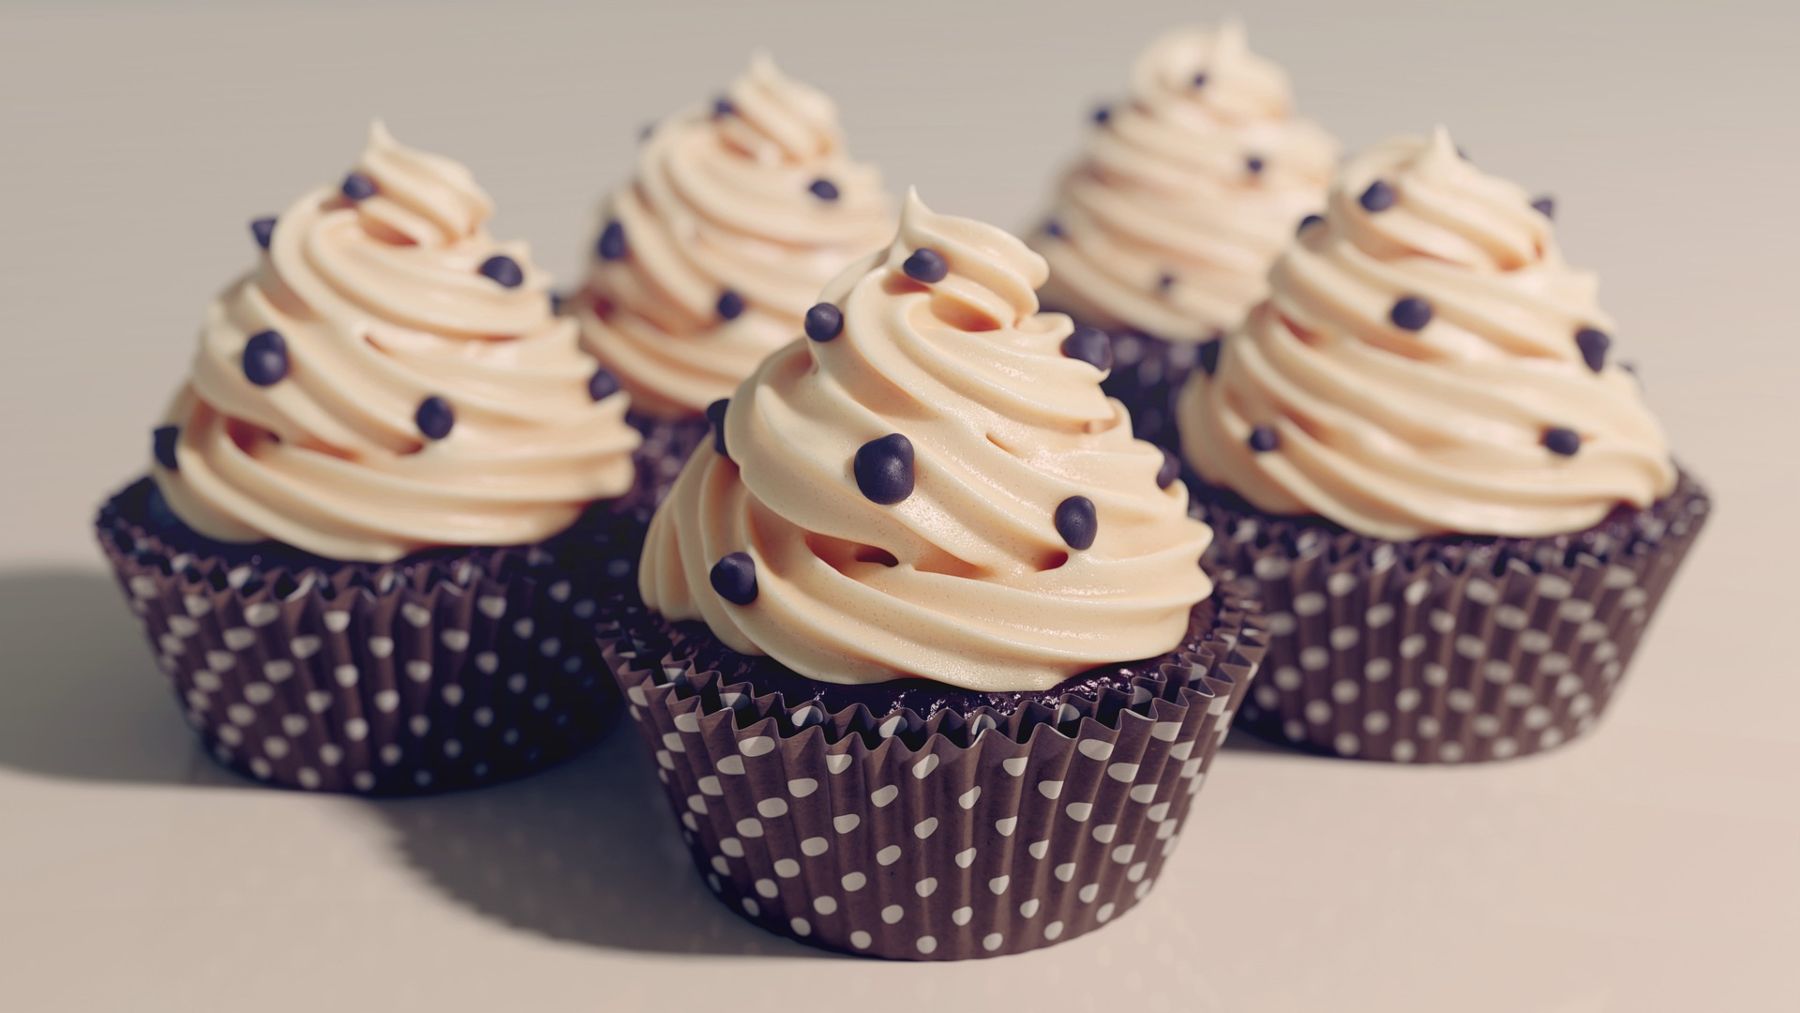 Cupcakes keto con chocolate: receta sin azúcar